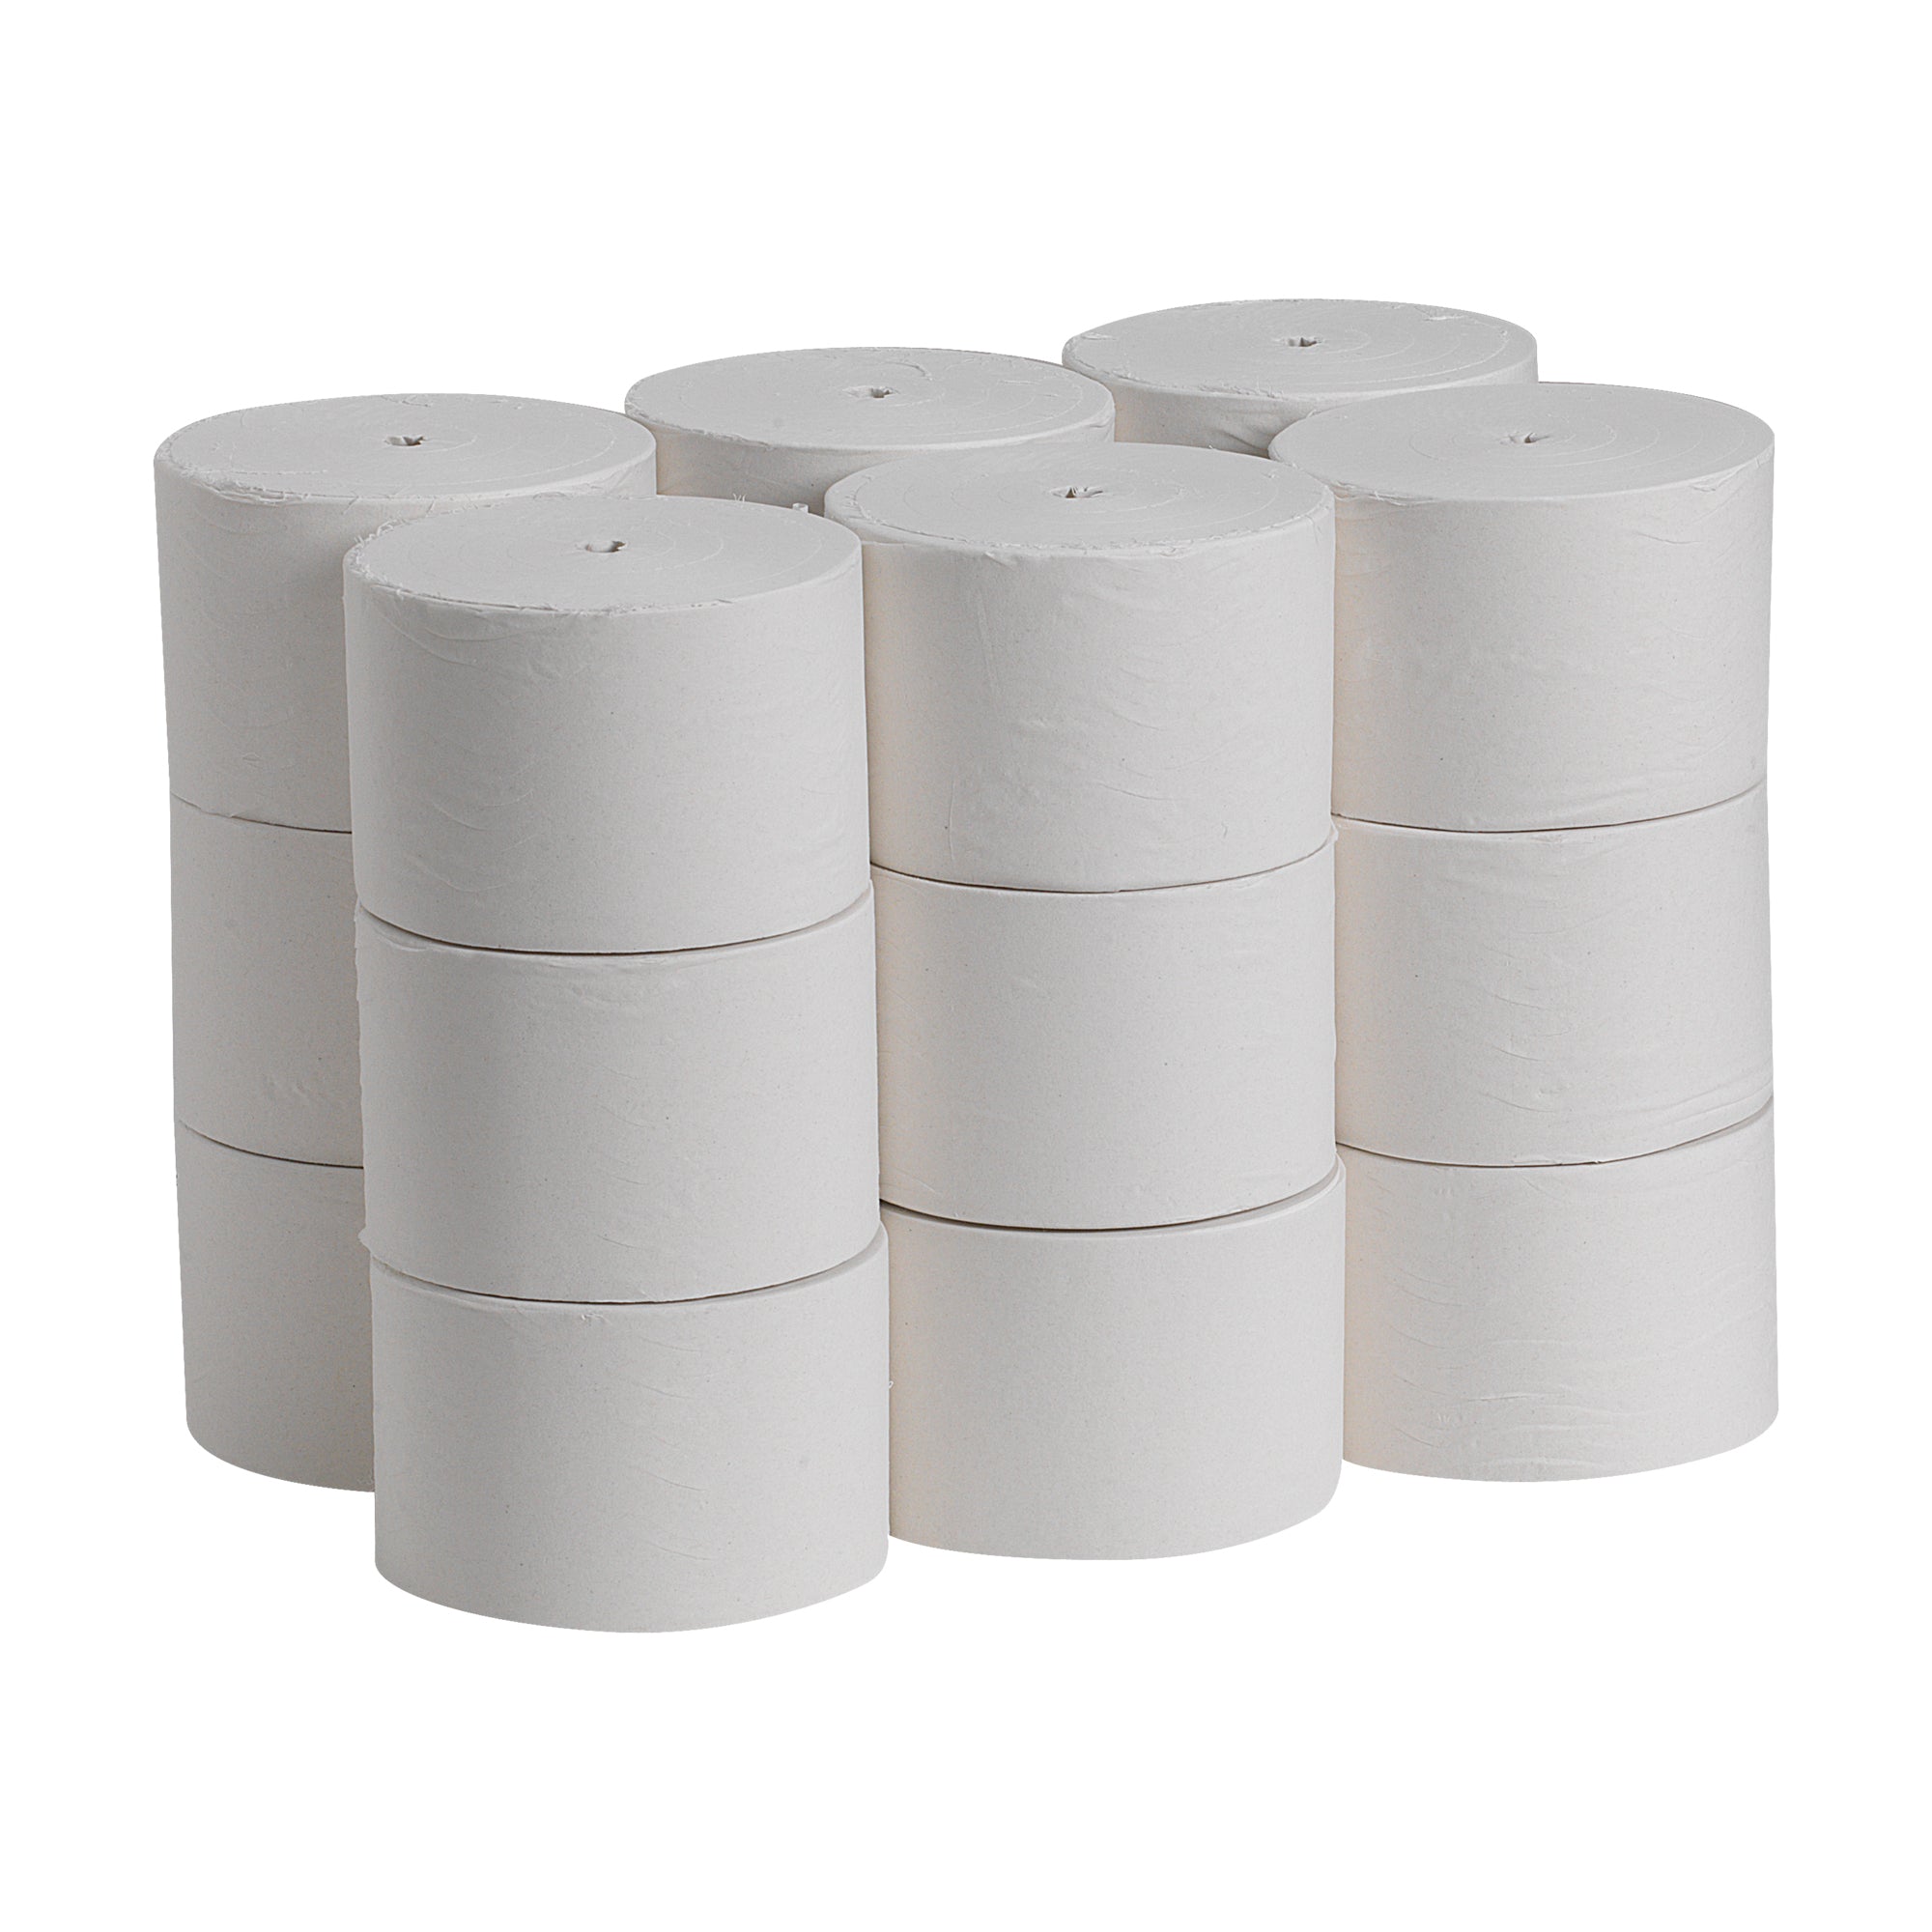 נייר טואלט ממוחזר חד שכבתי Compact® ללא ליבות, לבן, (18 גלילים של 304.80 מטרים סהכ 5486.40 מטרים) 54,000 גליונות למארז